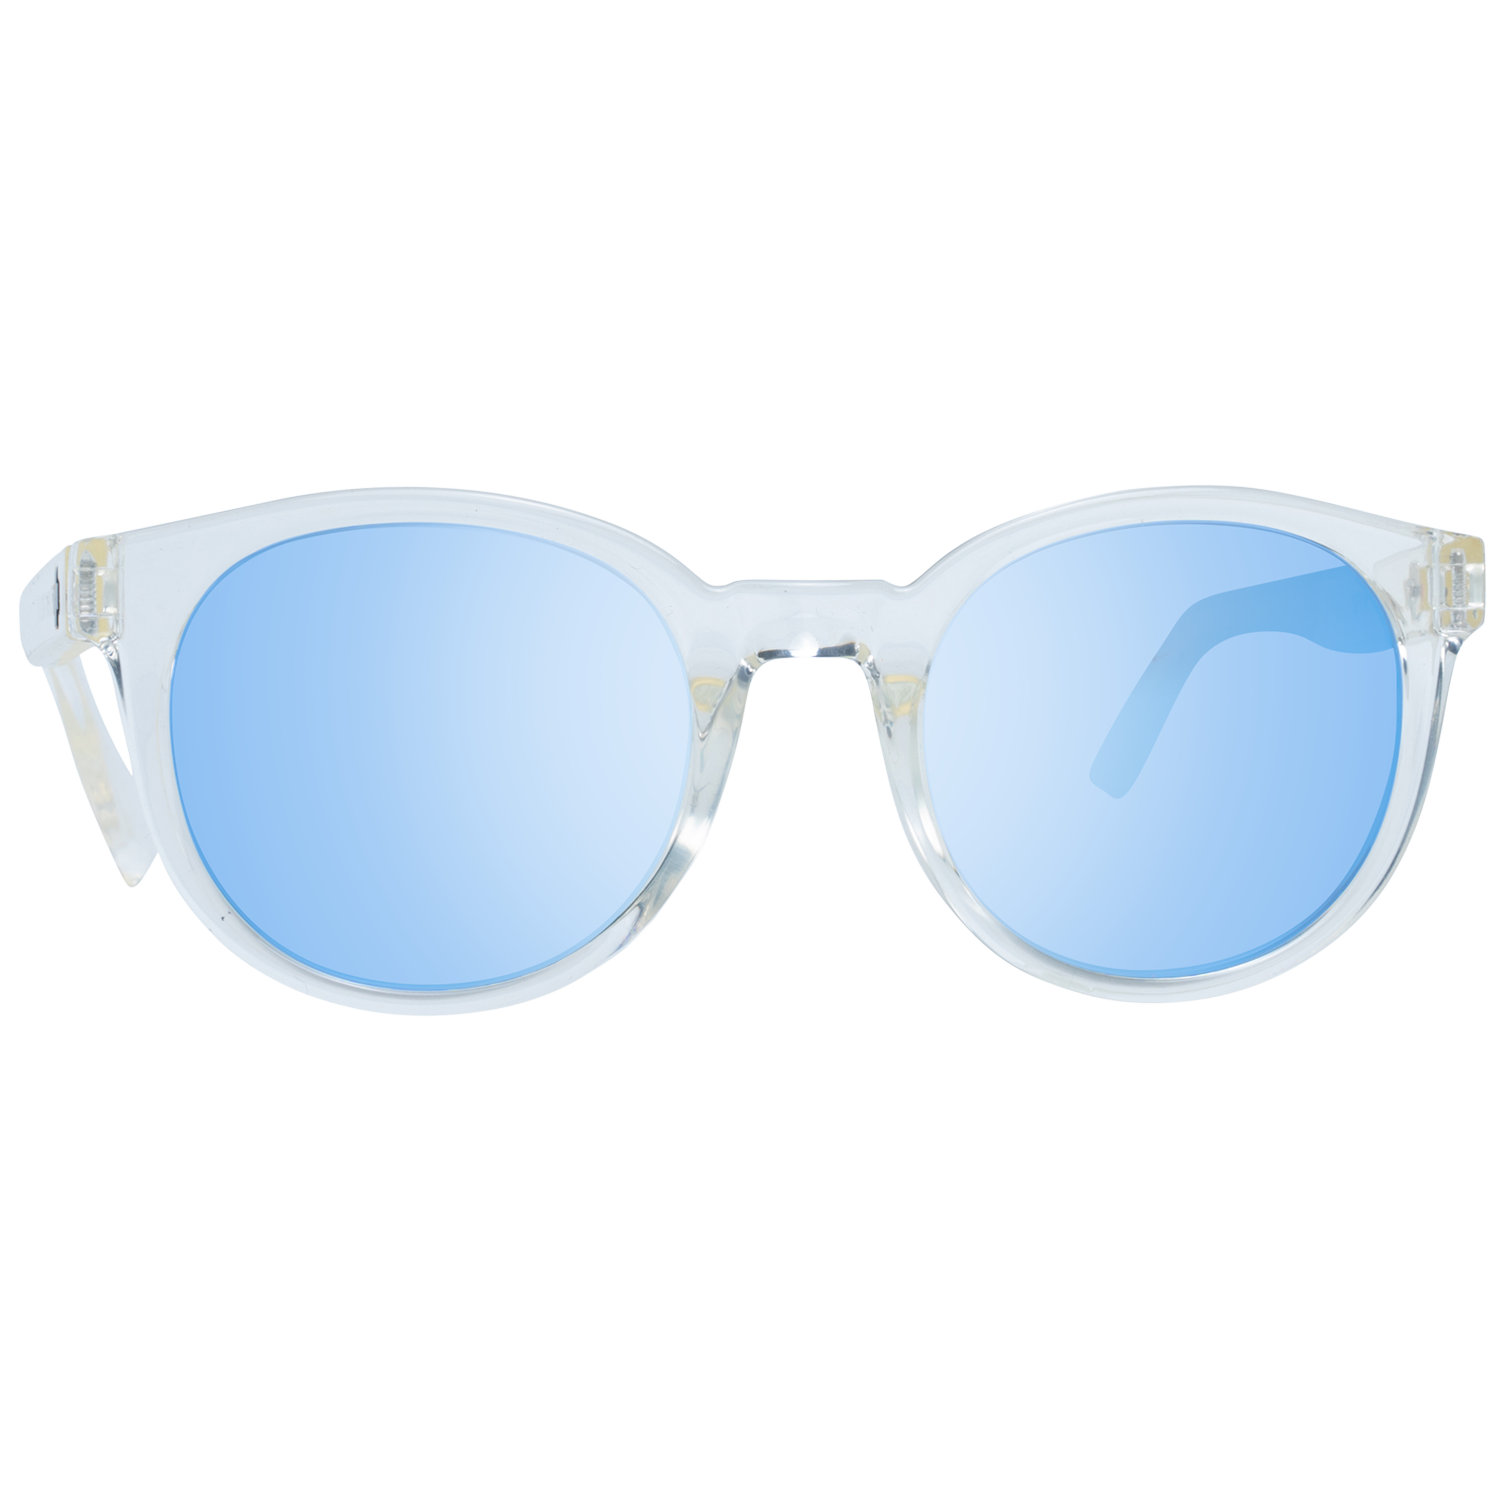 Spy Sunglasses Spy Sunglasses 673512222963 Hifi 48 Eyeglasses Eyewear UK USA Australia 